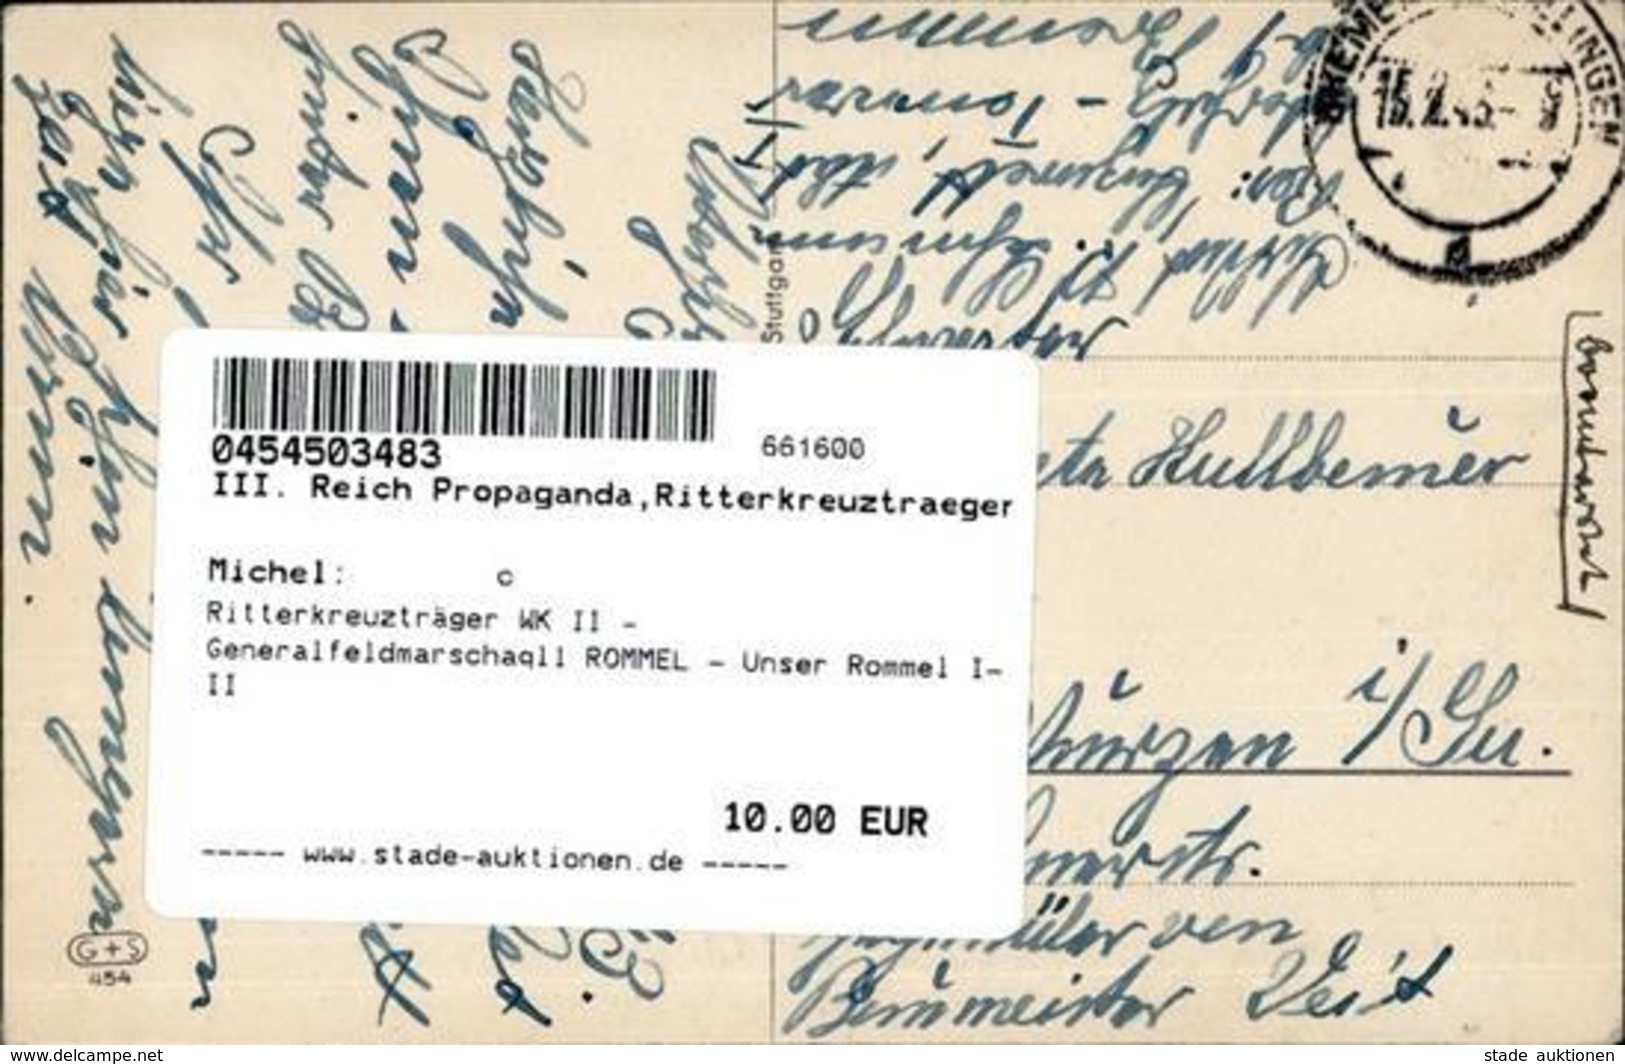 Ritterkreuzträger WK II - Generalfeldmarschaqll ROMMEL - Unser Rommel I-II - Guerre 1939-45